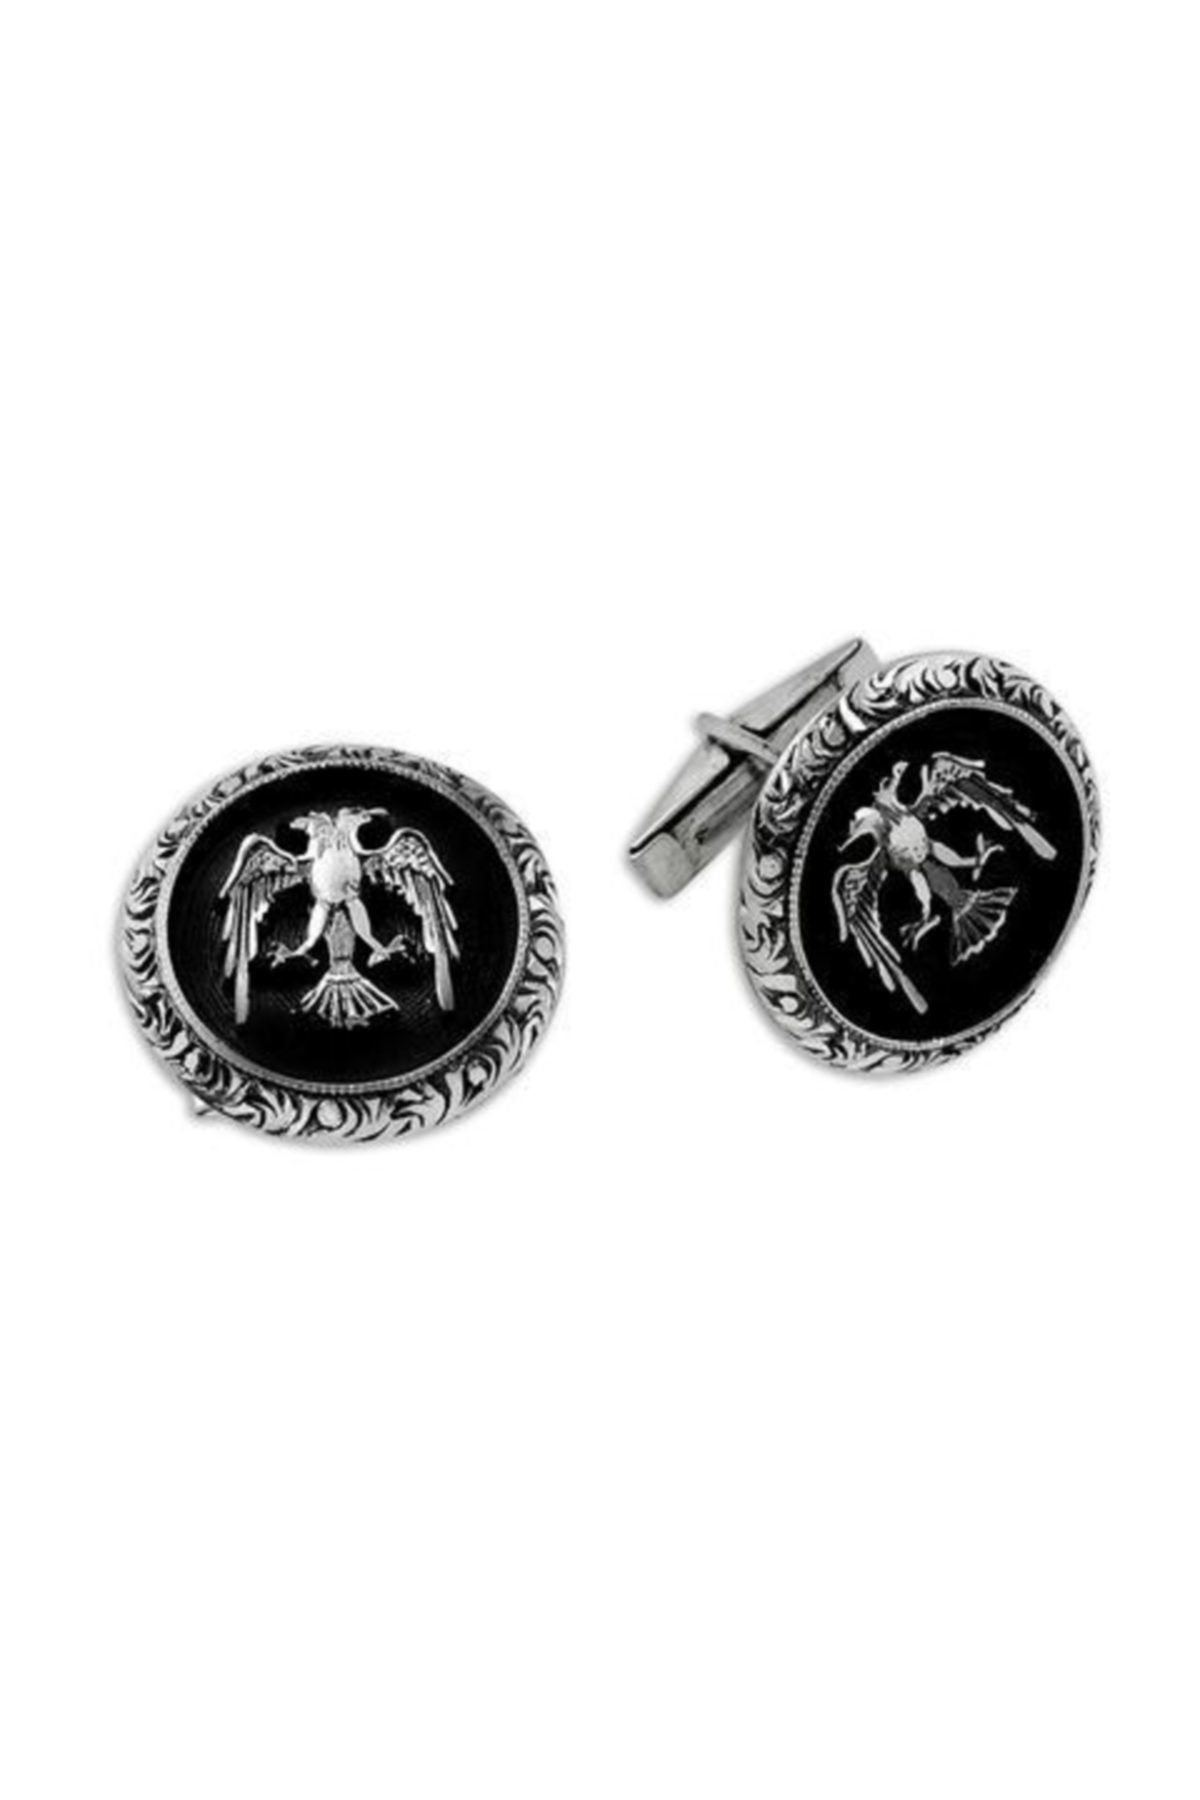 OltutaşıMarket Erkek Çift Başlı Kartal Desenli El Işi 925 Ayar Gümüş Kol Düğmesi